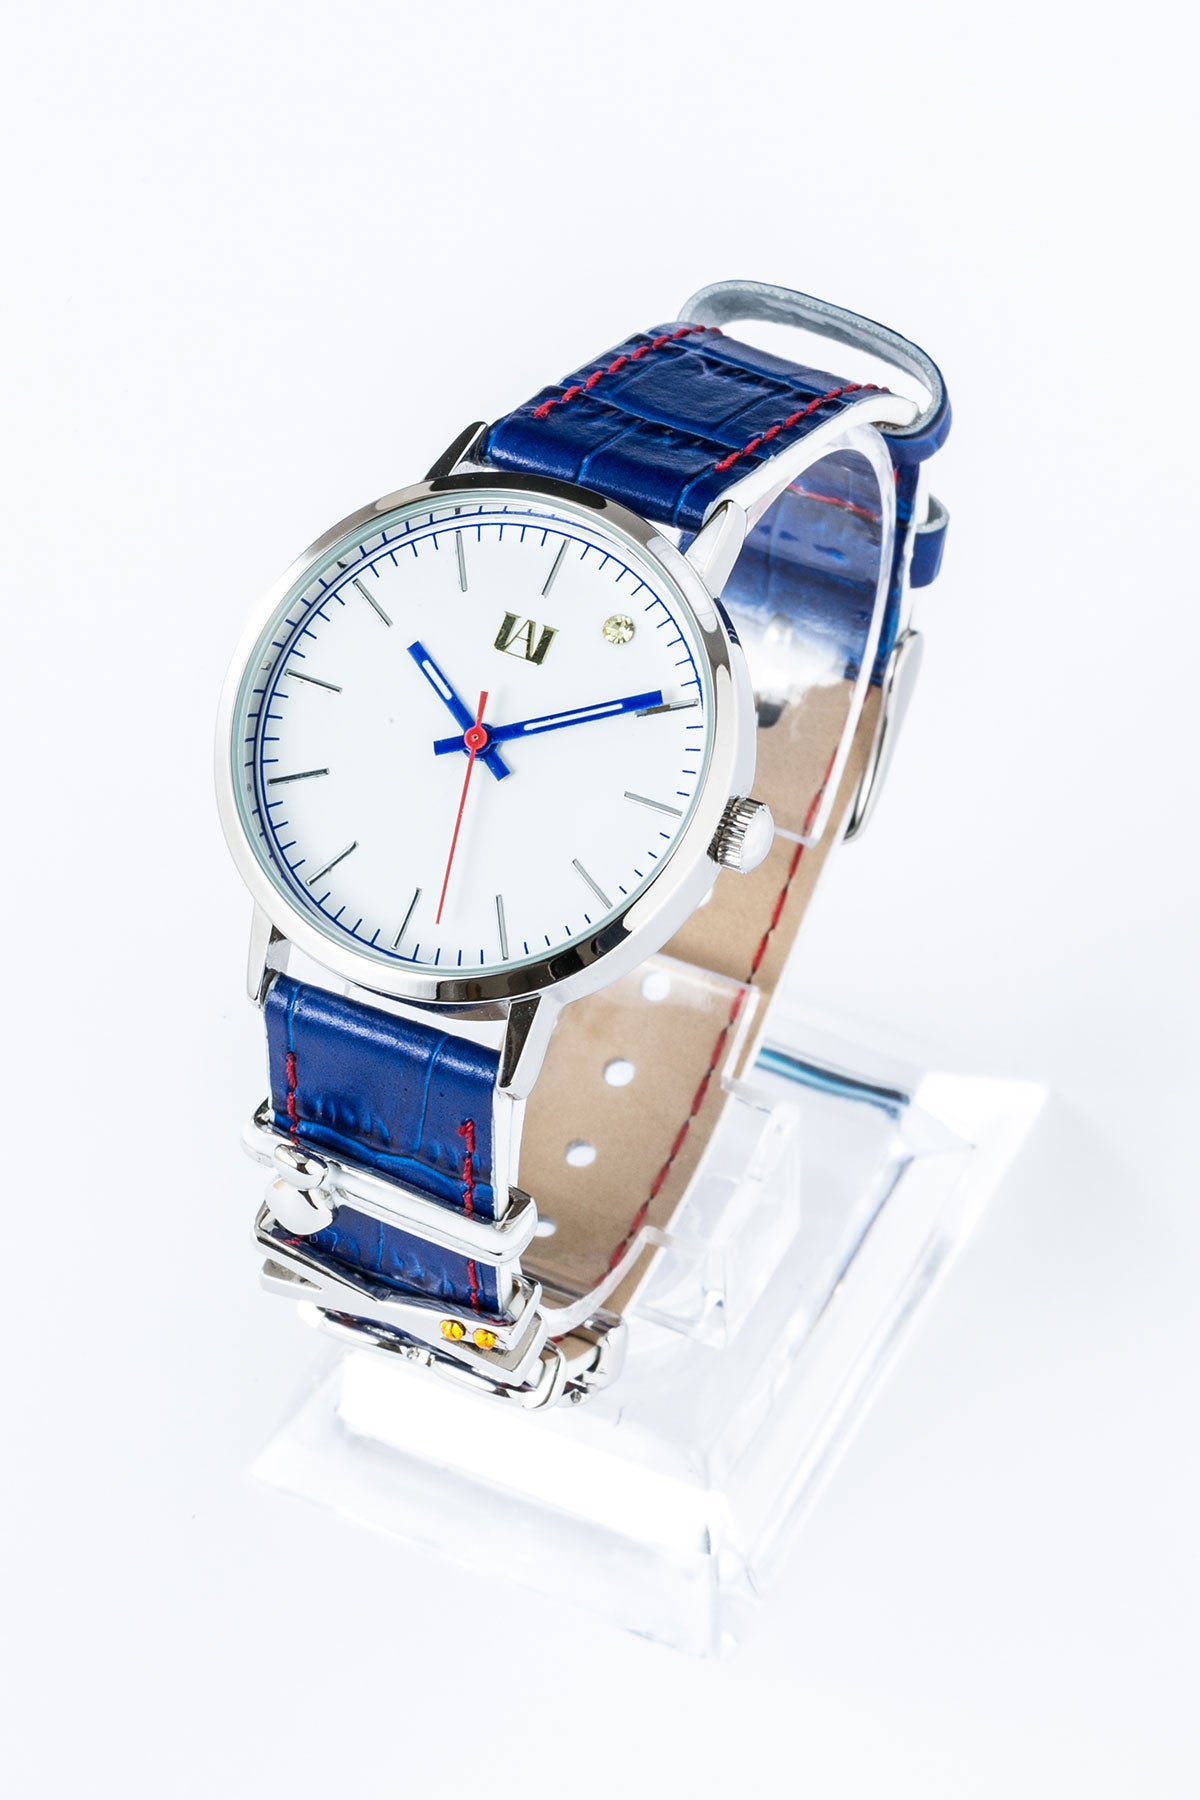 ヒロアカ 腕時計 緑谷出久モデル - 時計